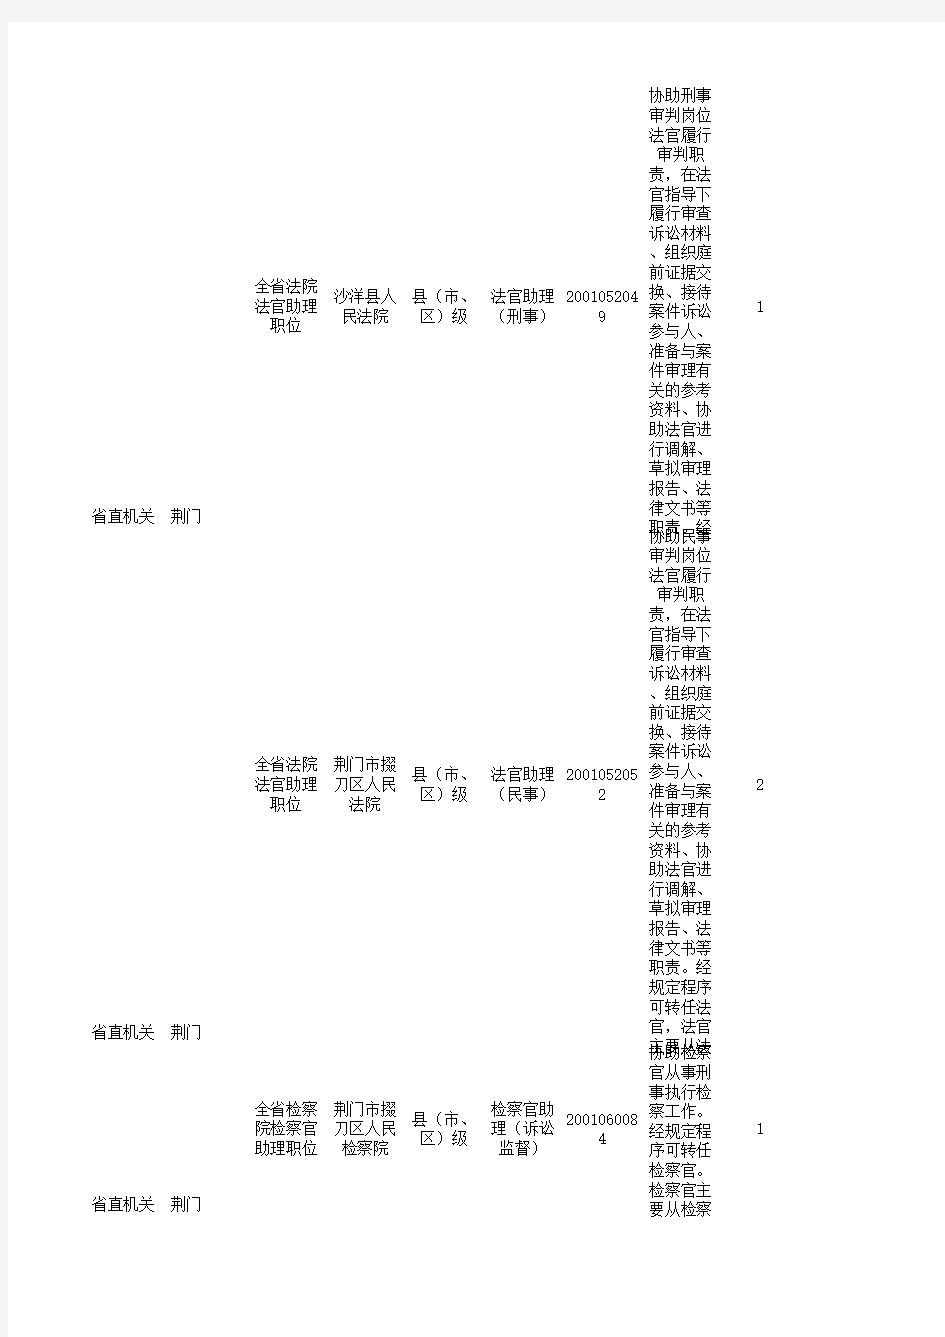 2016年湖北省公务员考试职位表(荆门)